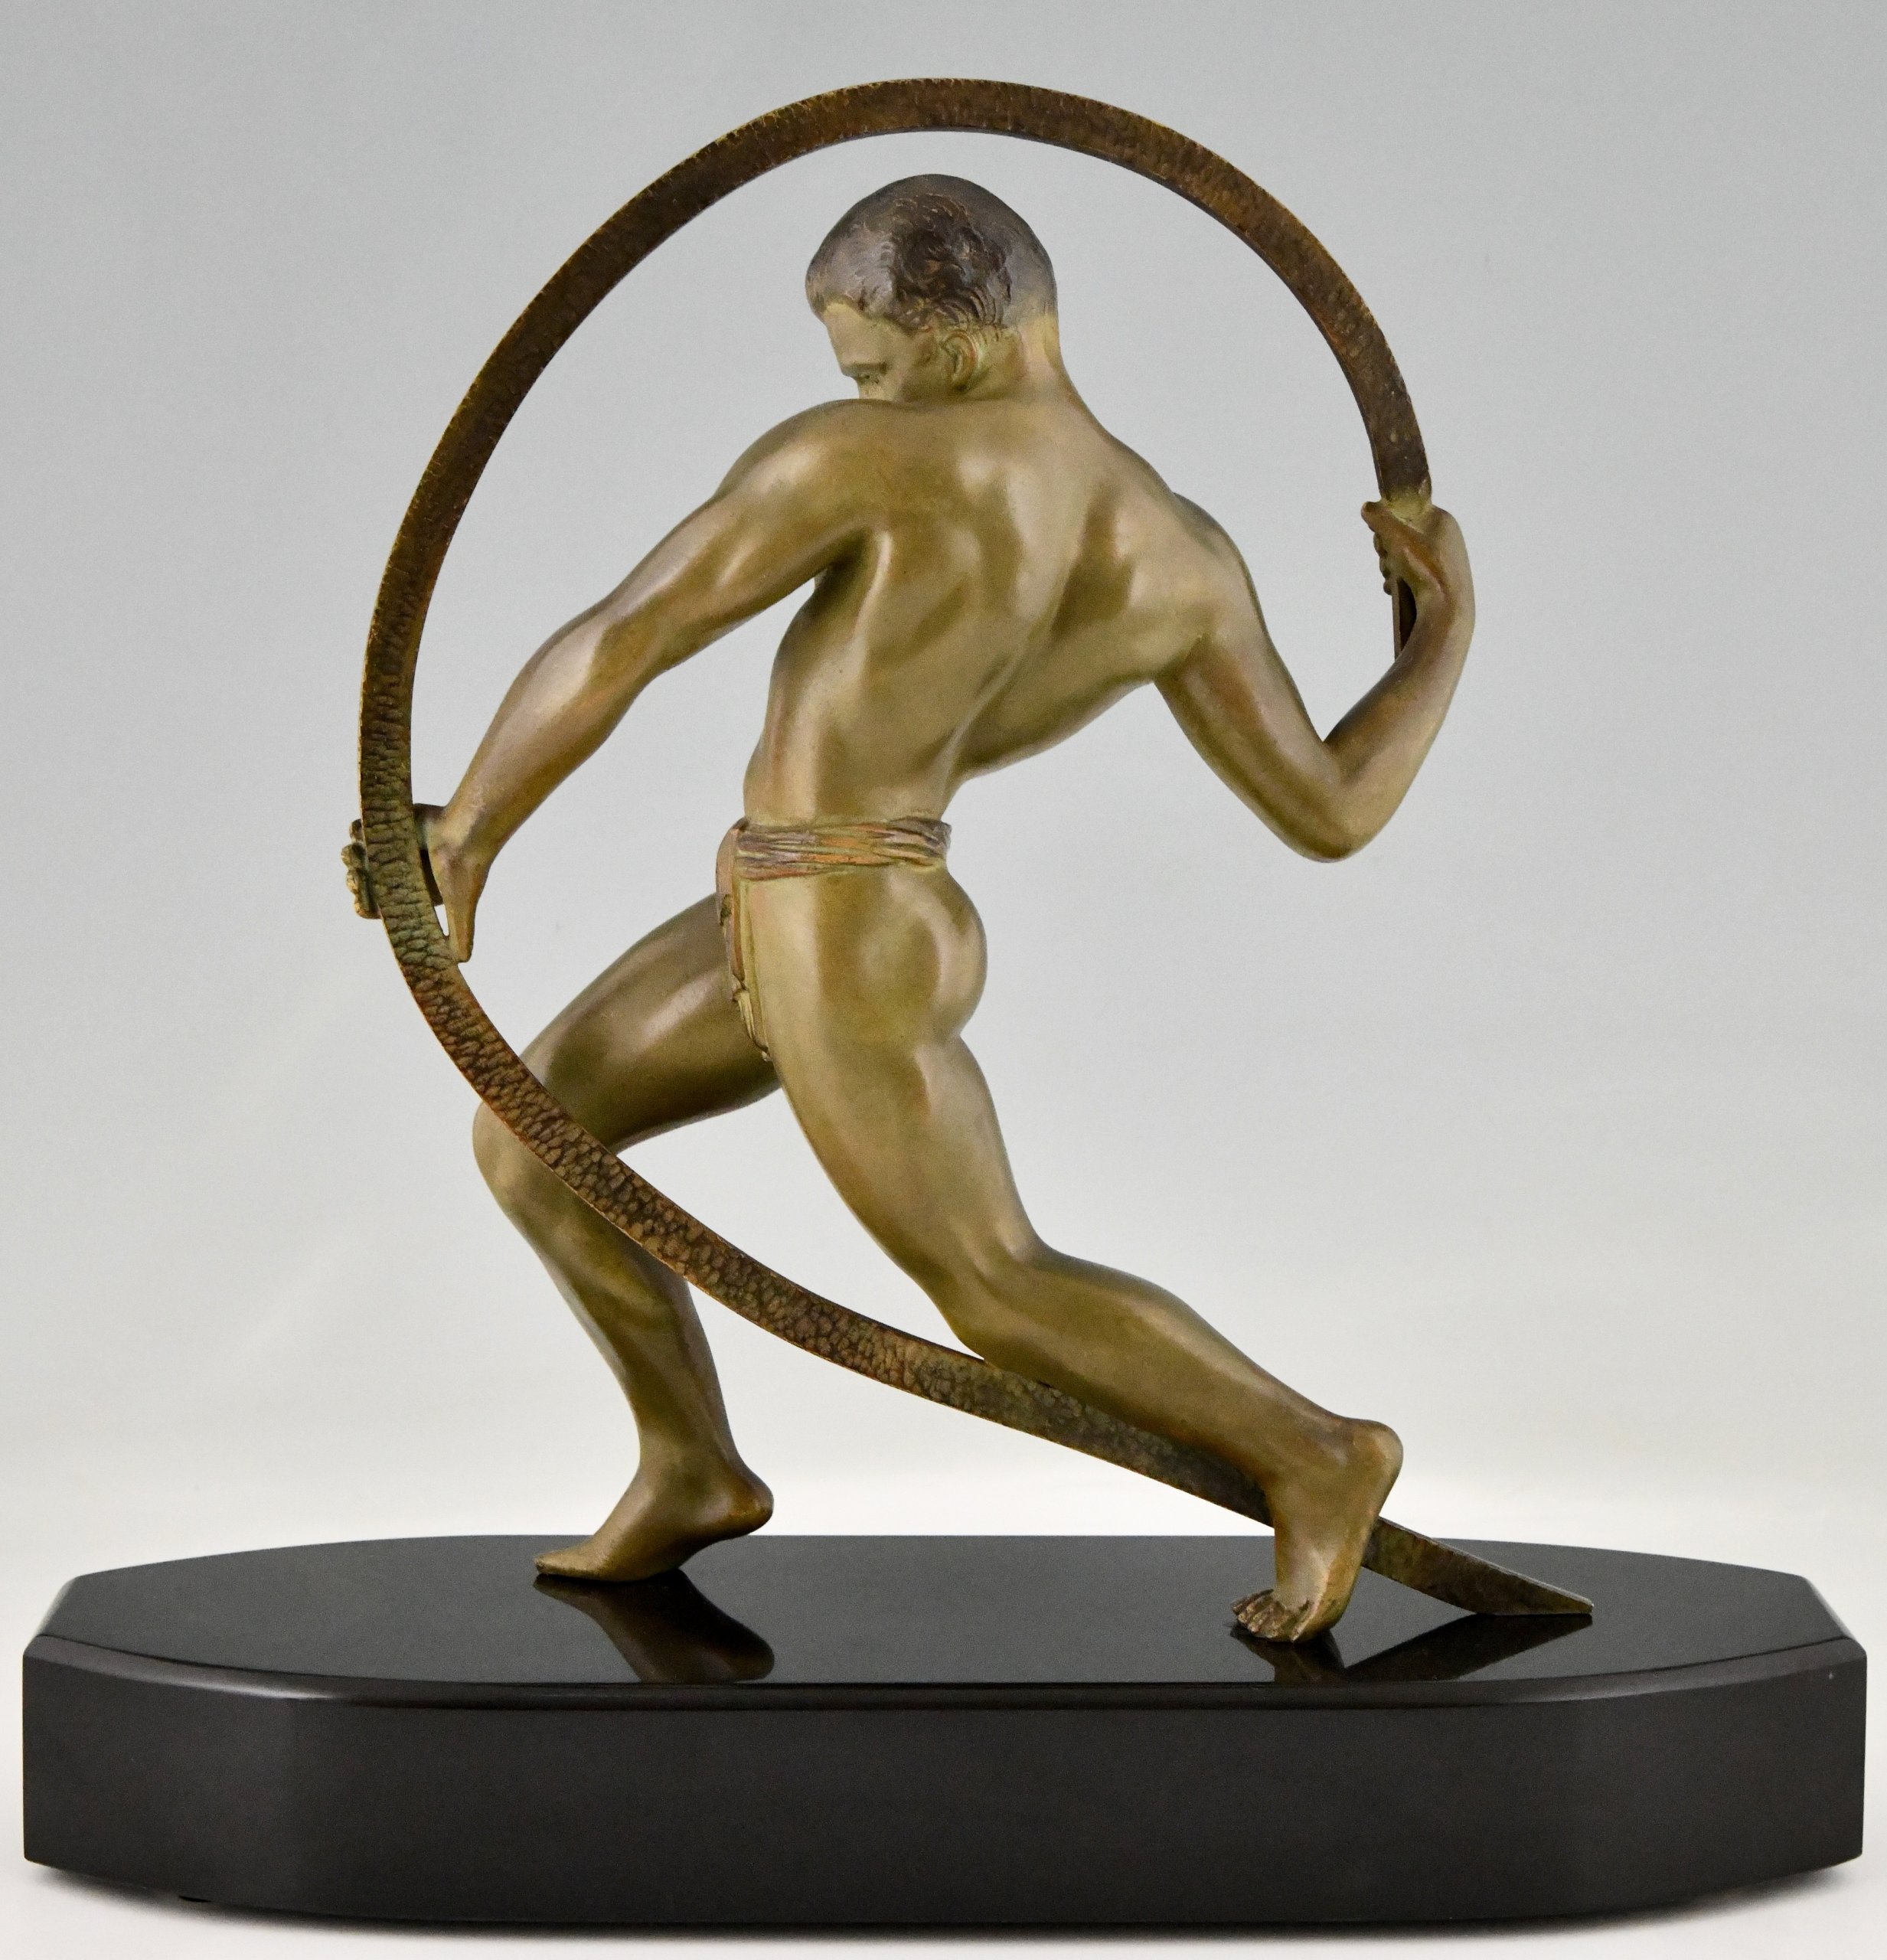 Art Deco sculpture of an athlete.